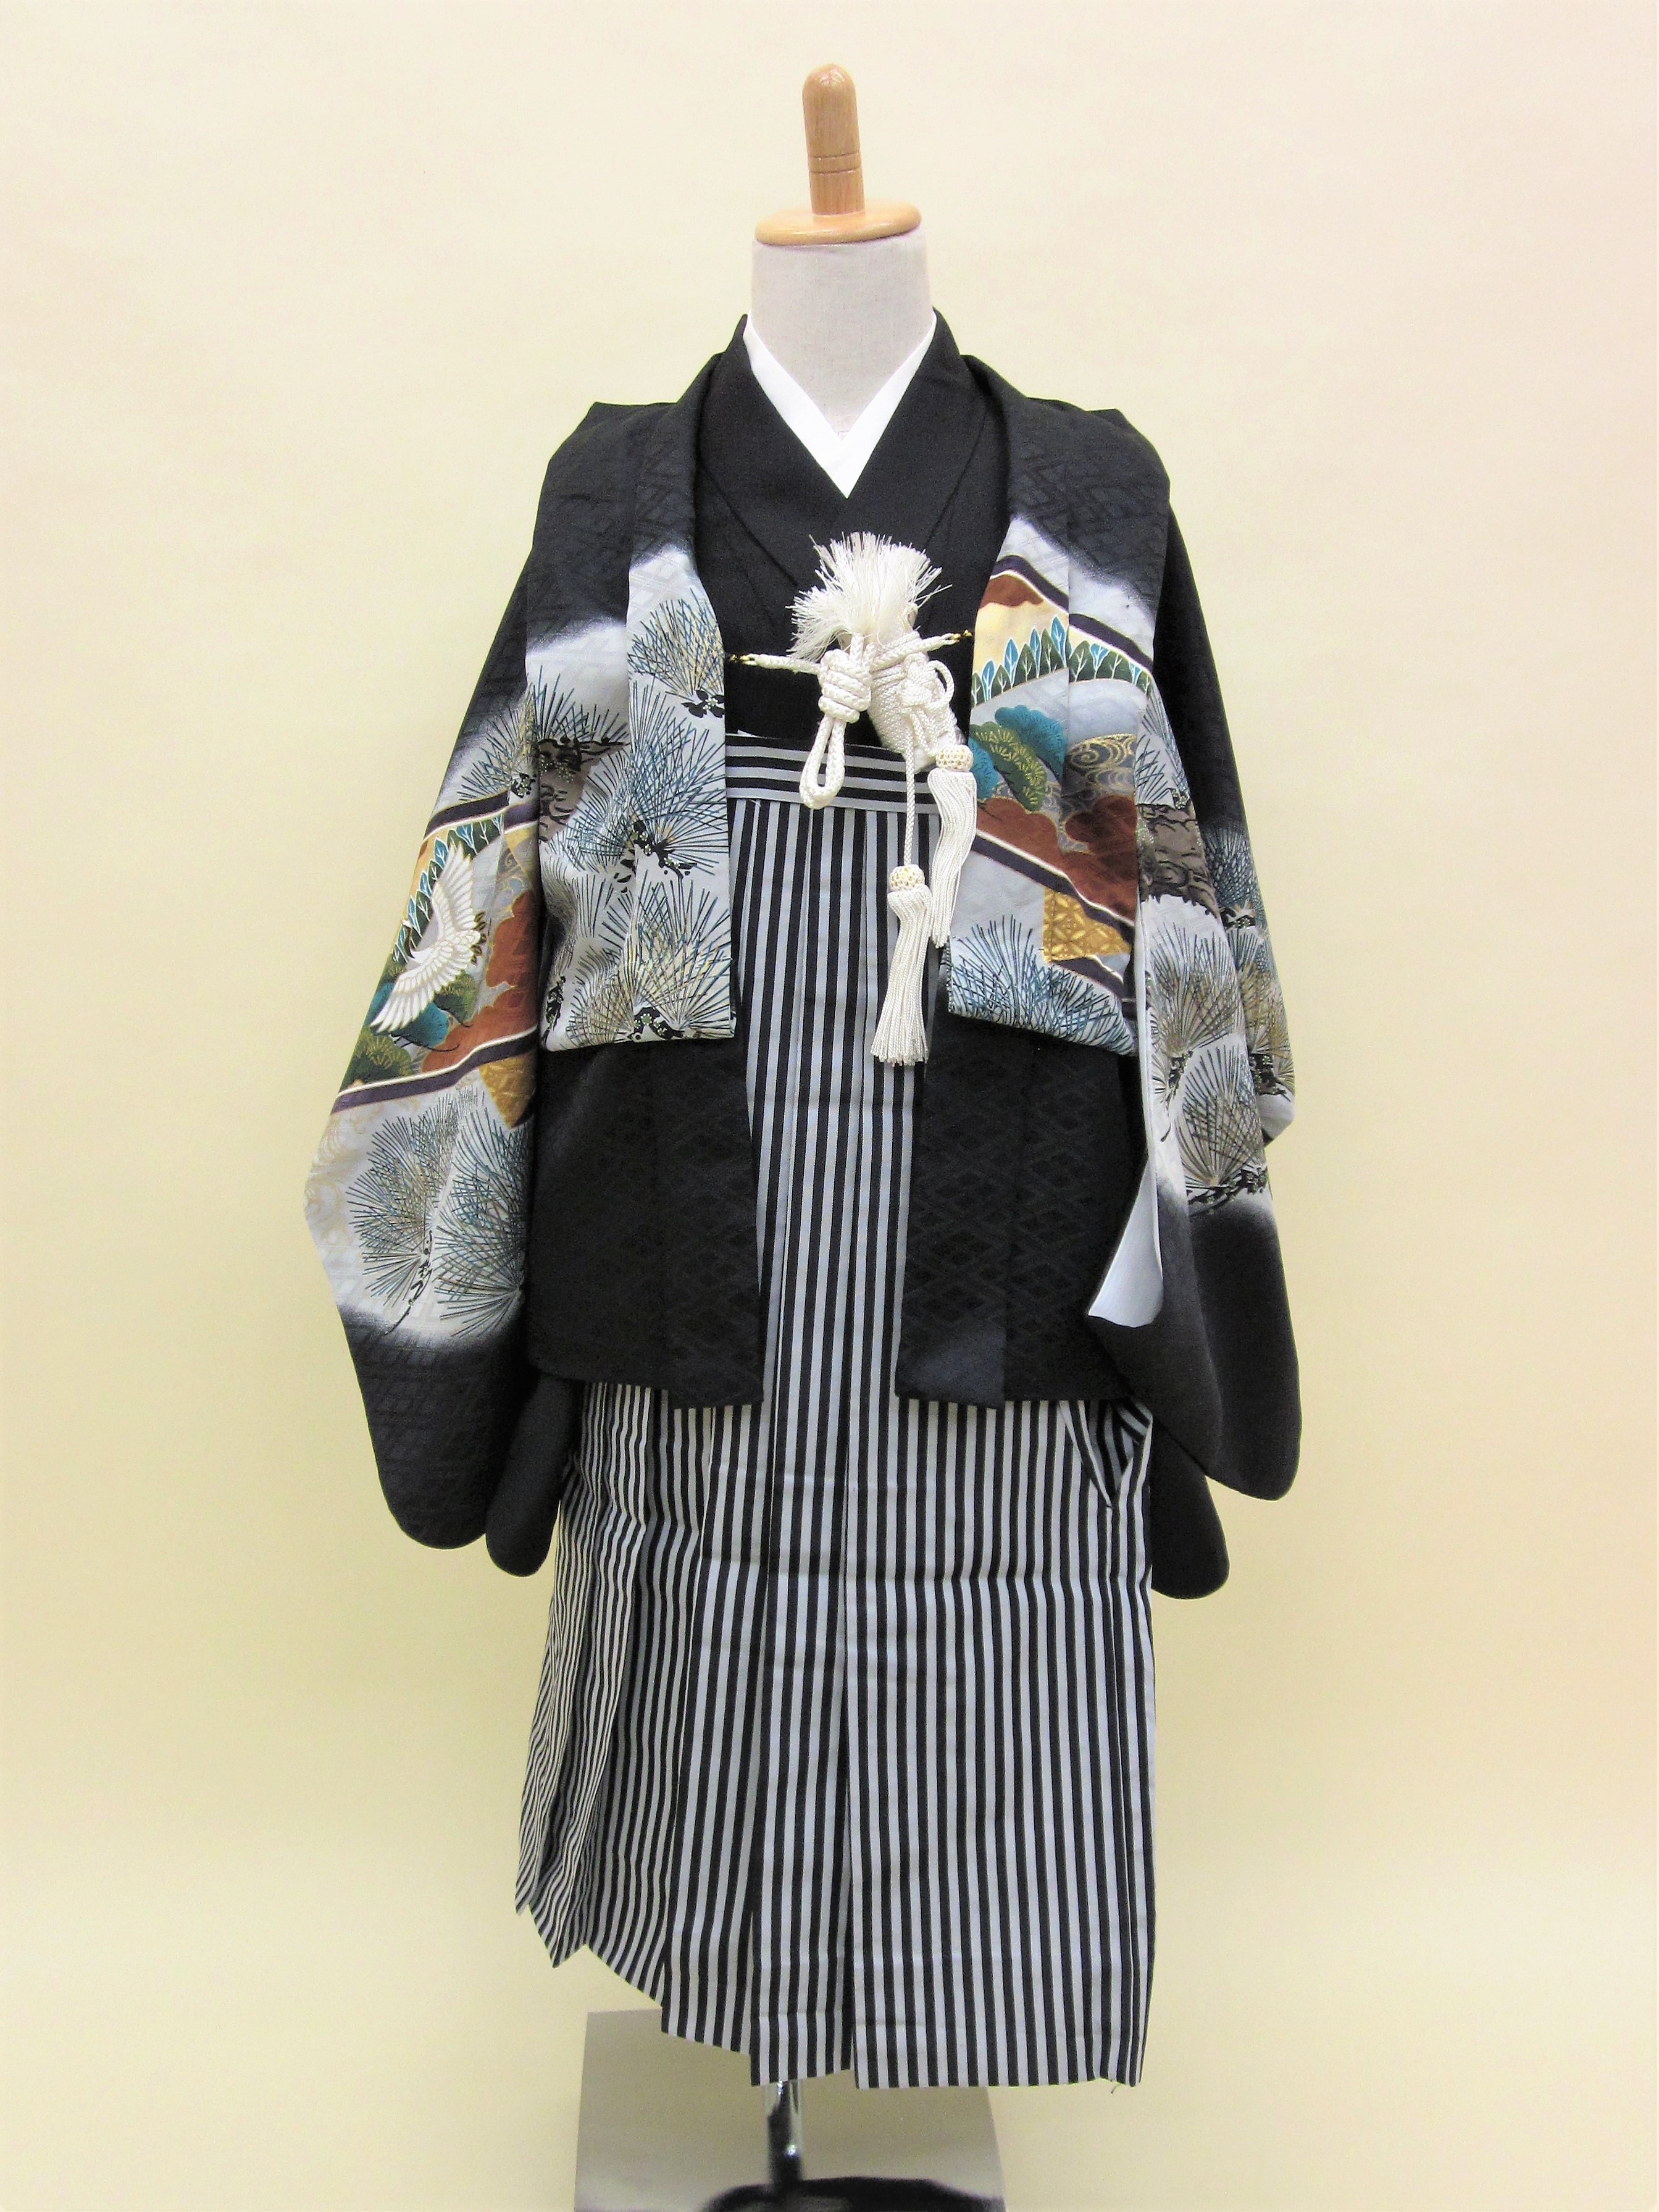 5歳男児 羽織袴フルセット「黒地羽織袴」